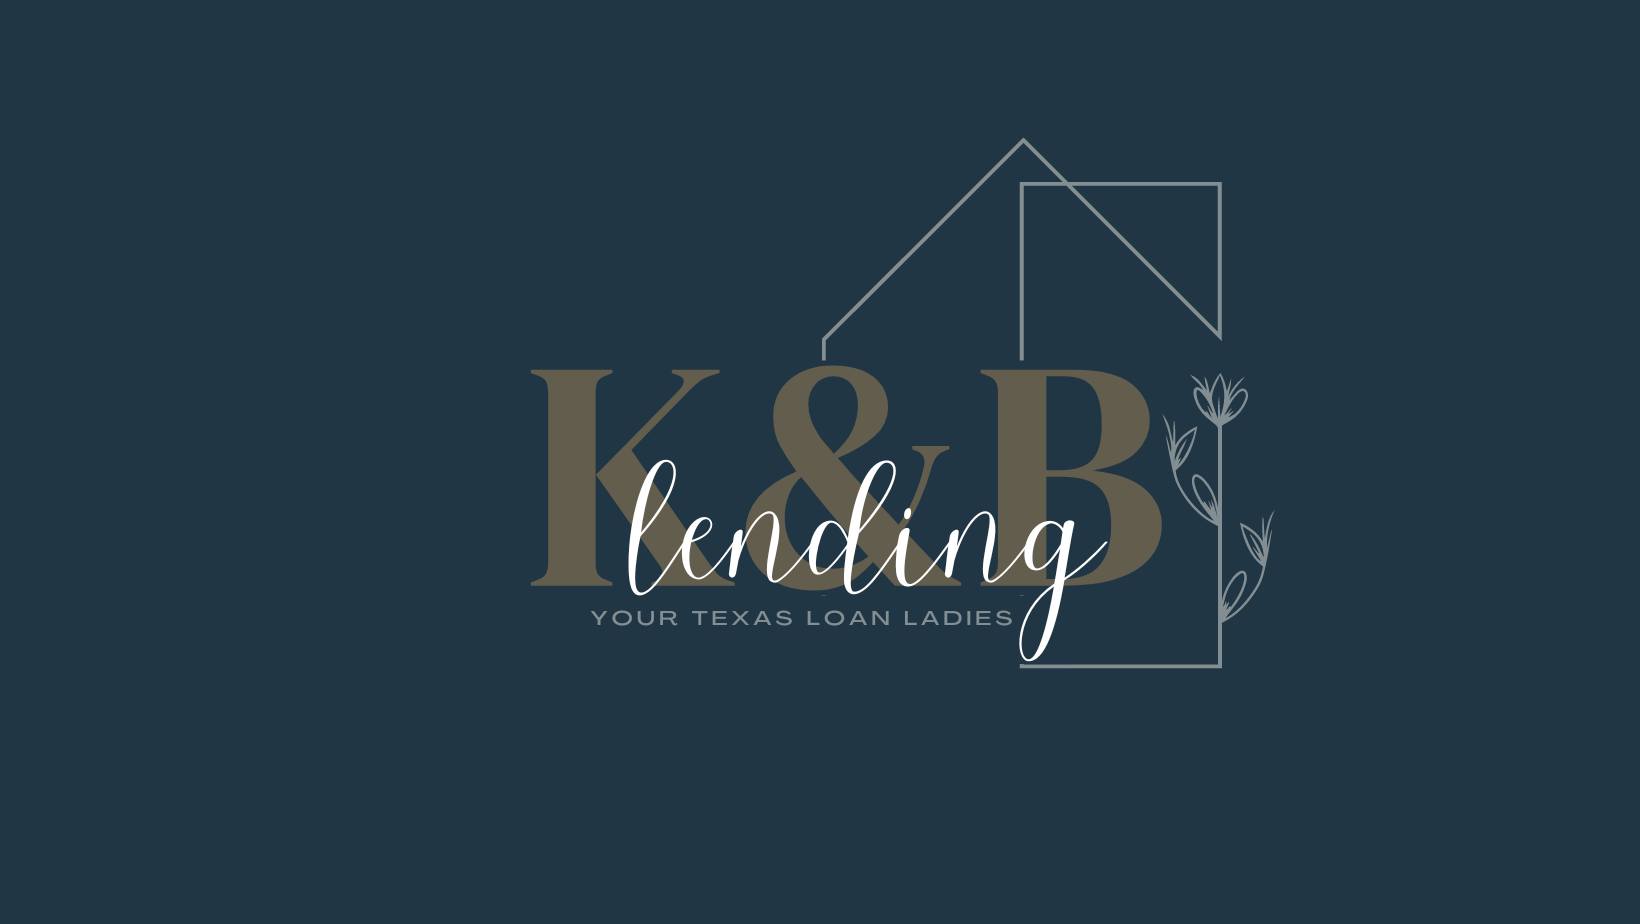 K&B Lending Texas Loan Ladies Karrie Tucker Waco